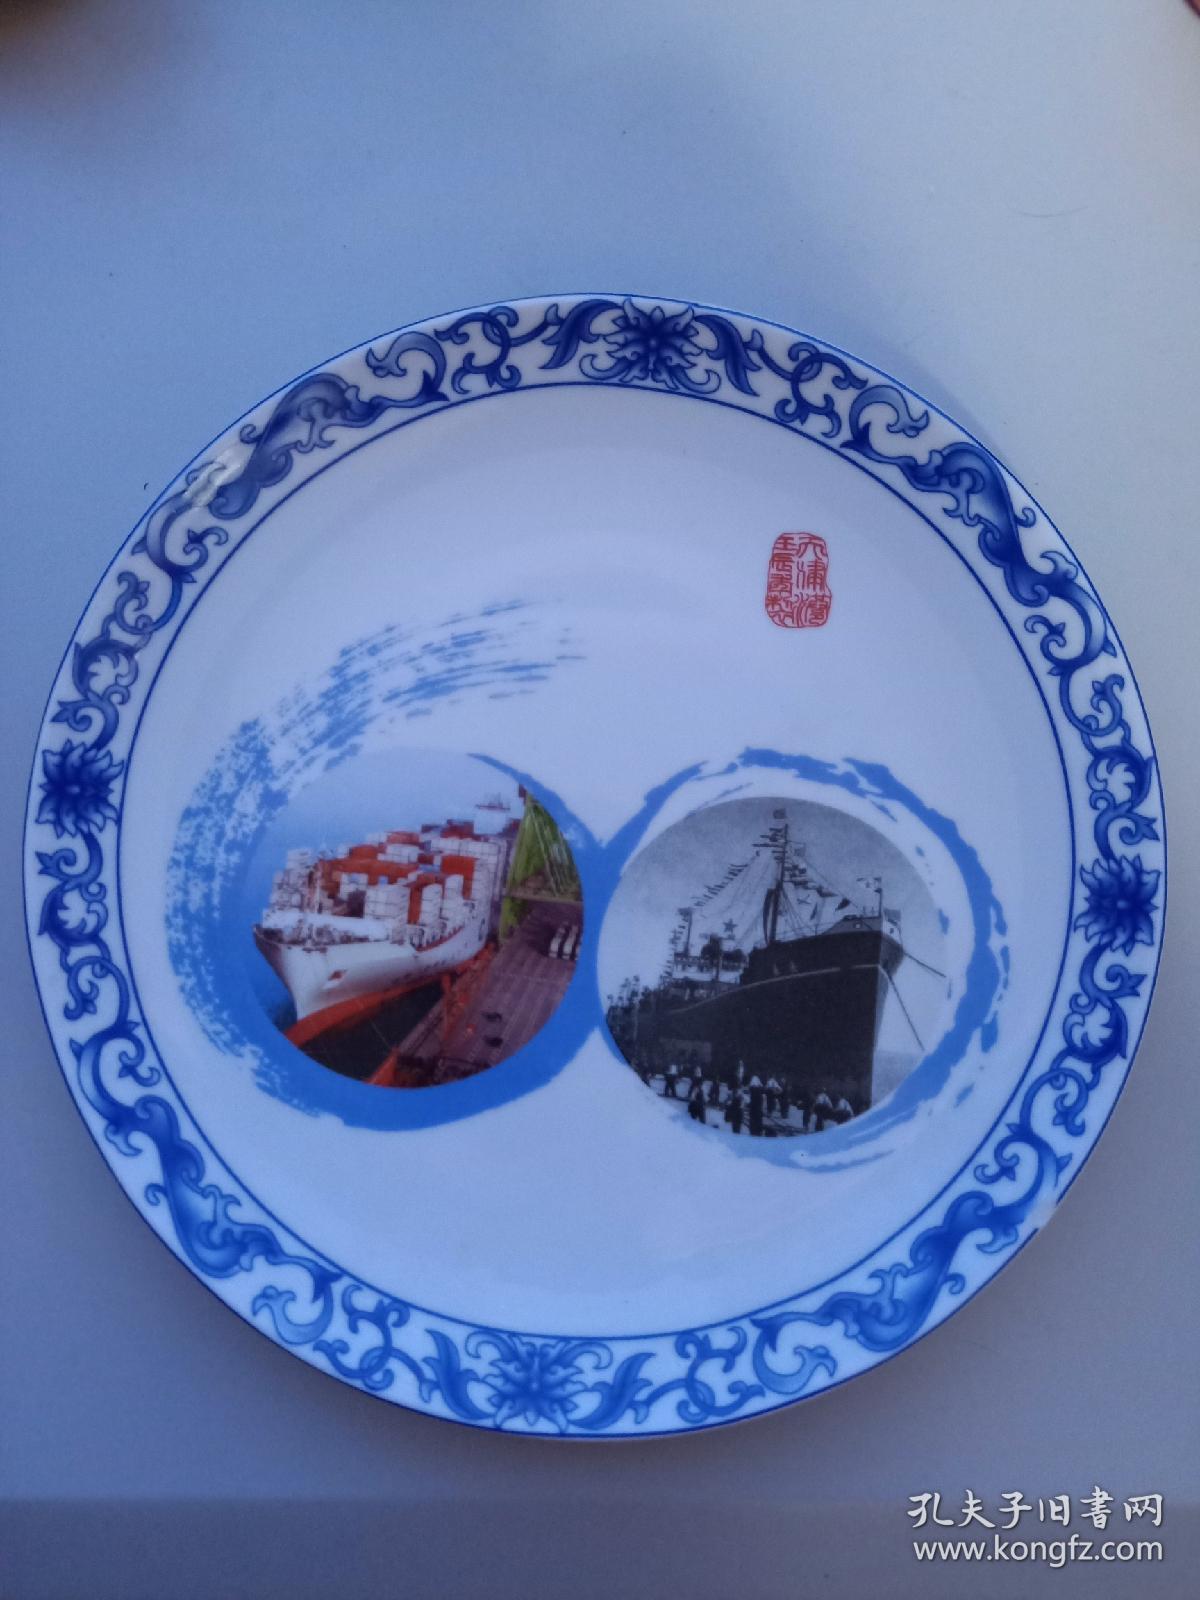 天津港重新开港60周年 纪念瓷盘  景德镇  瓷盘有一小磕缺陷，购买者注意。